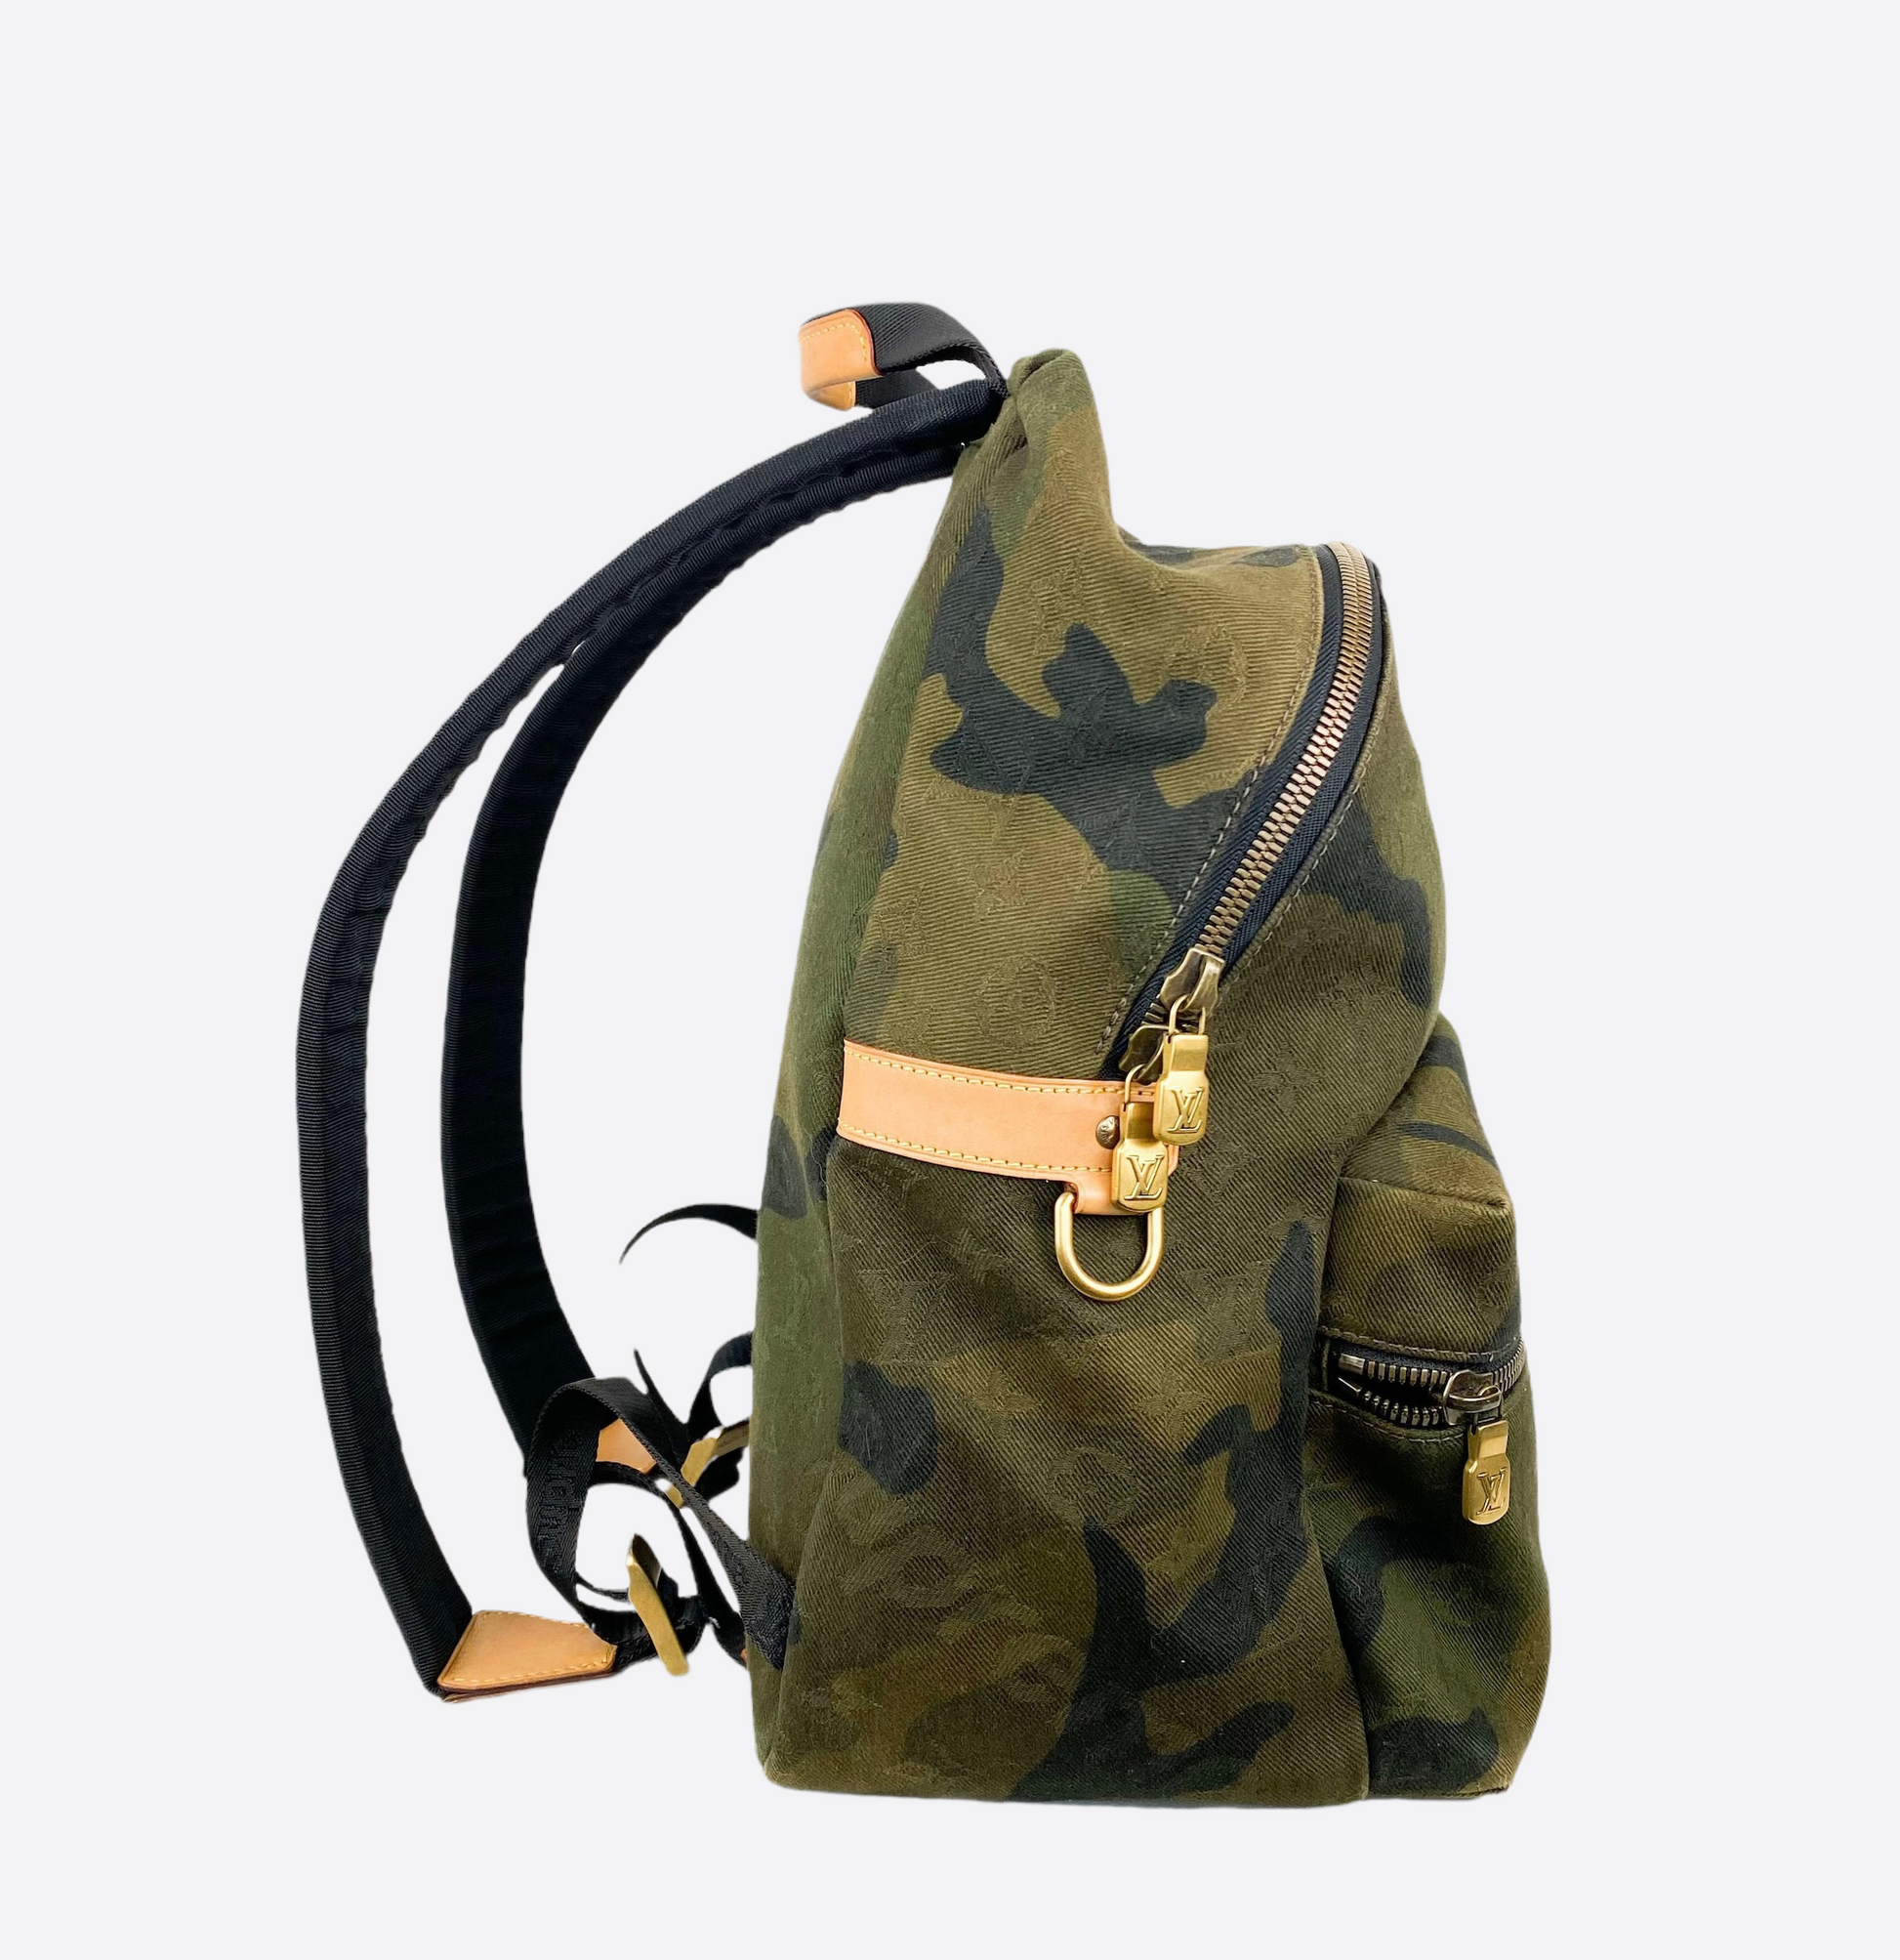 Louis Vuitton Supreme Camo Monogram Apollo Backpack